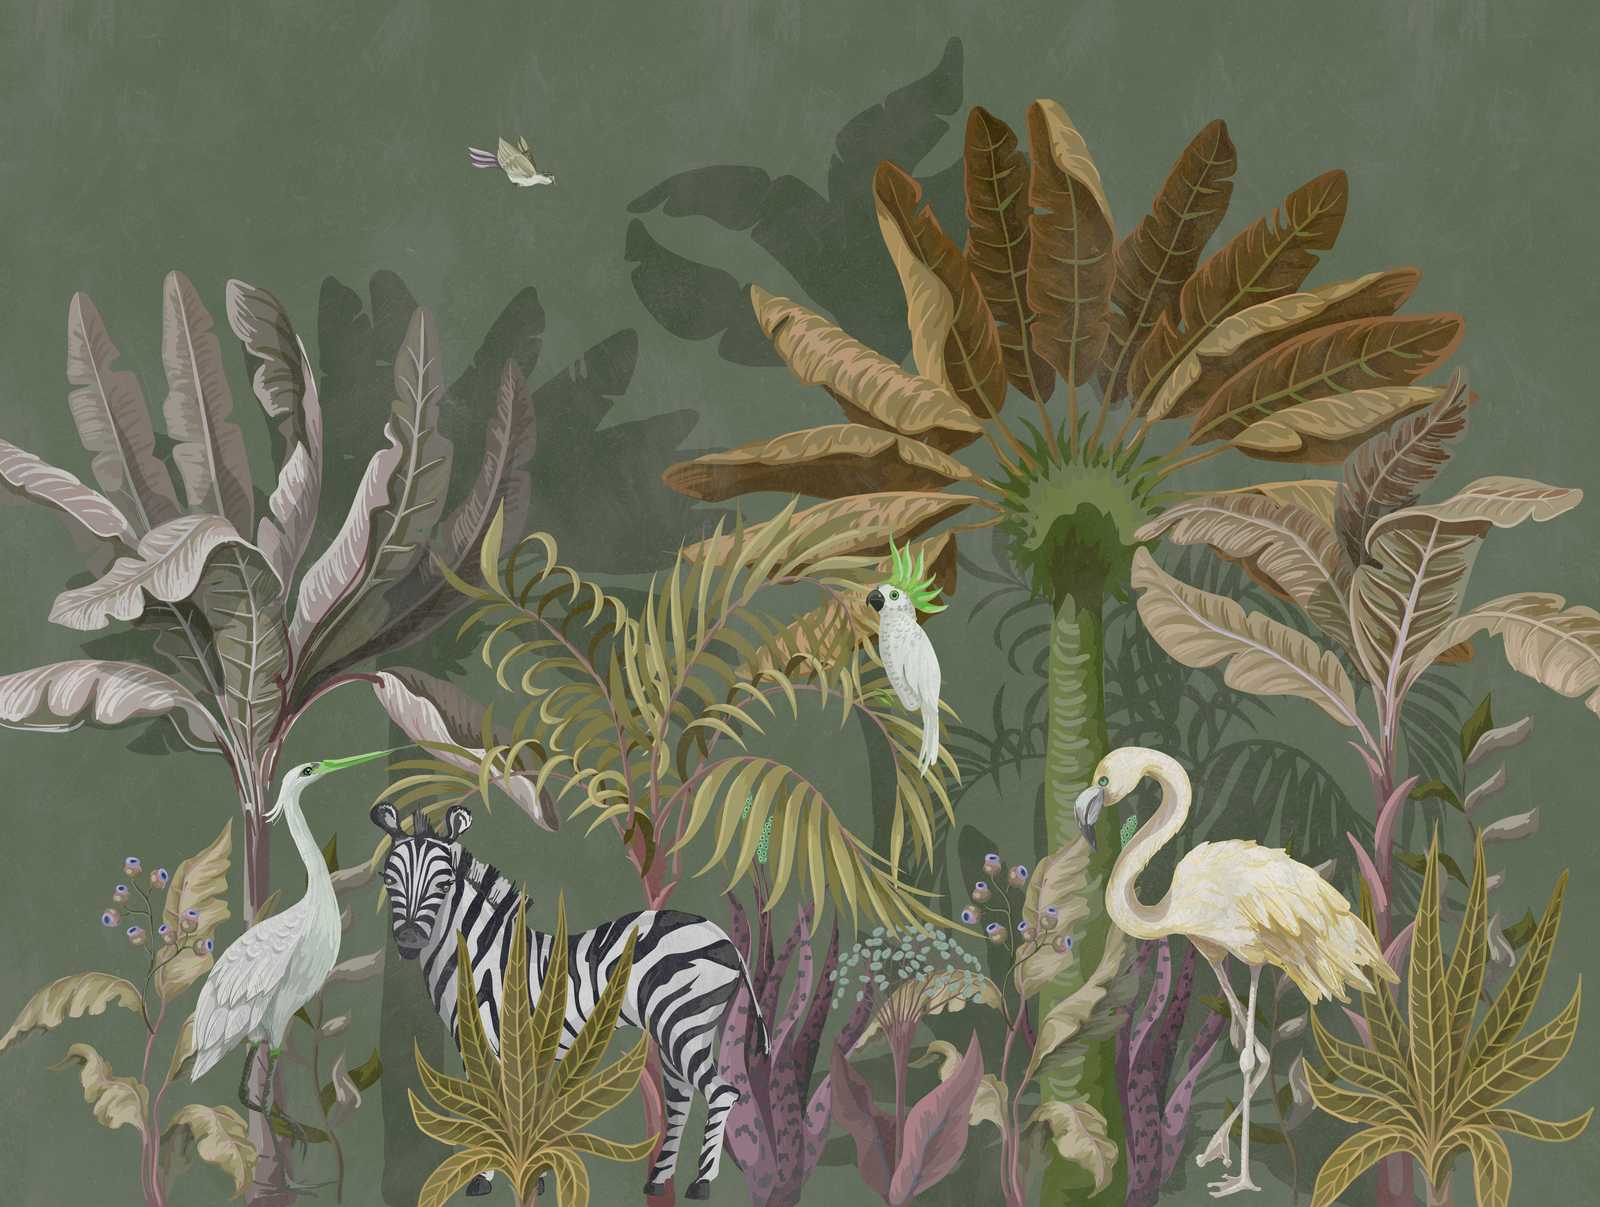             Tapeten-Neuheit | Dschungel Motivtapete Bildmotiv Tiere & Pflanzen
        